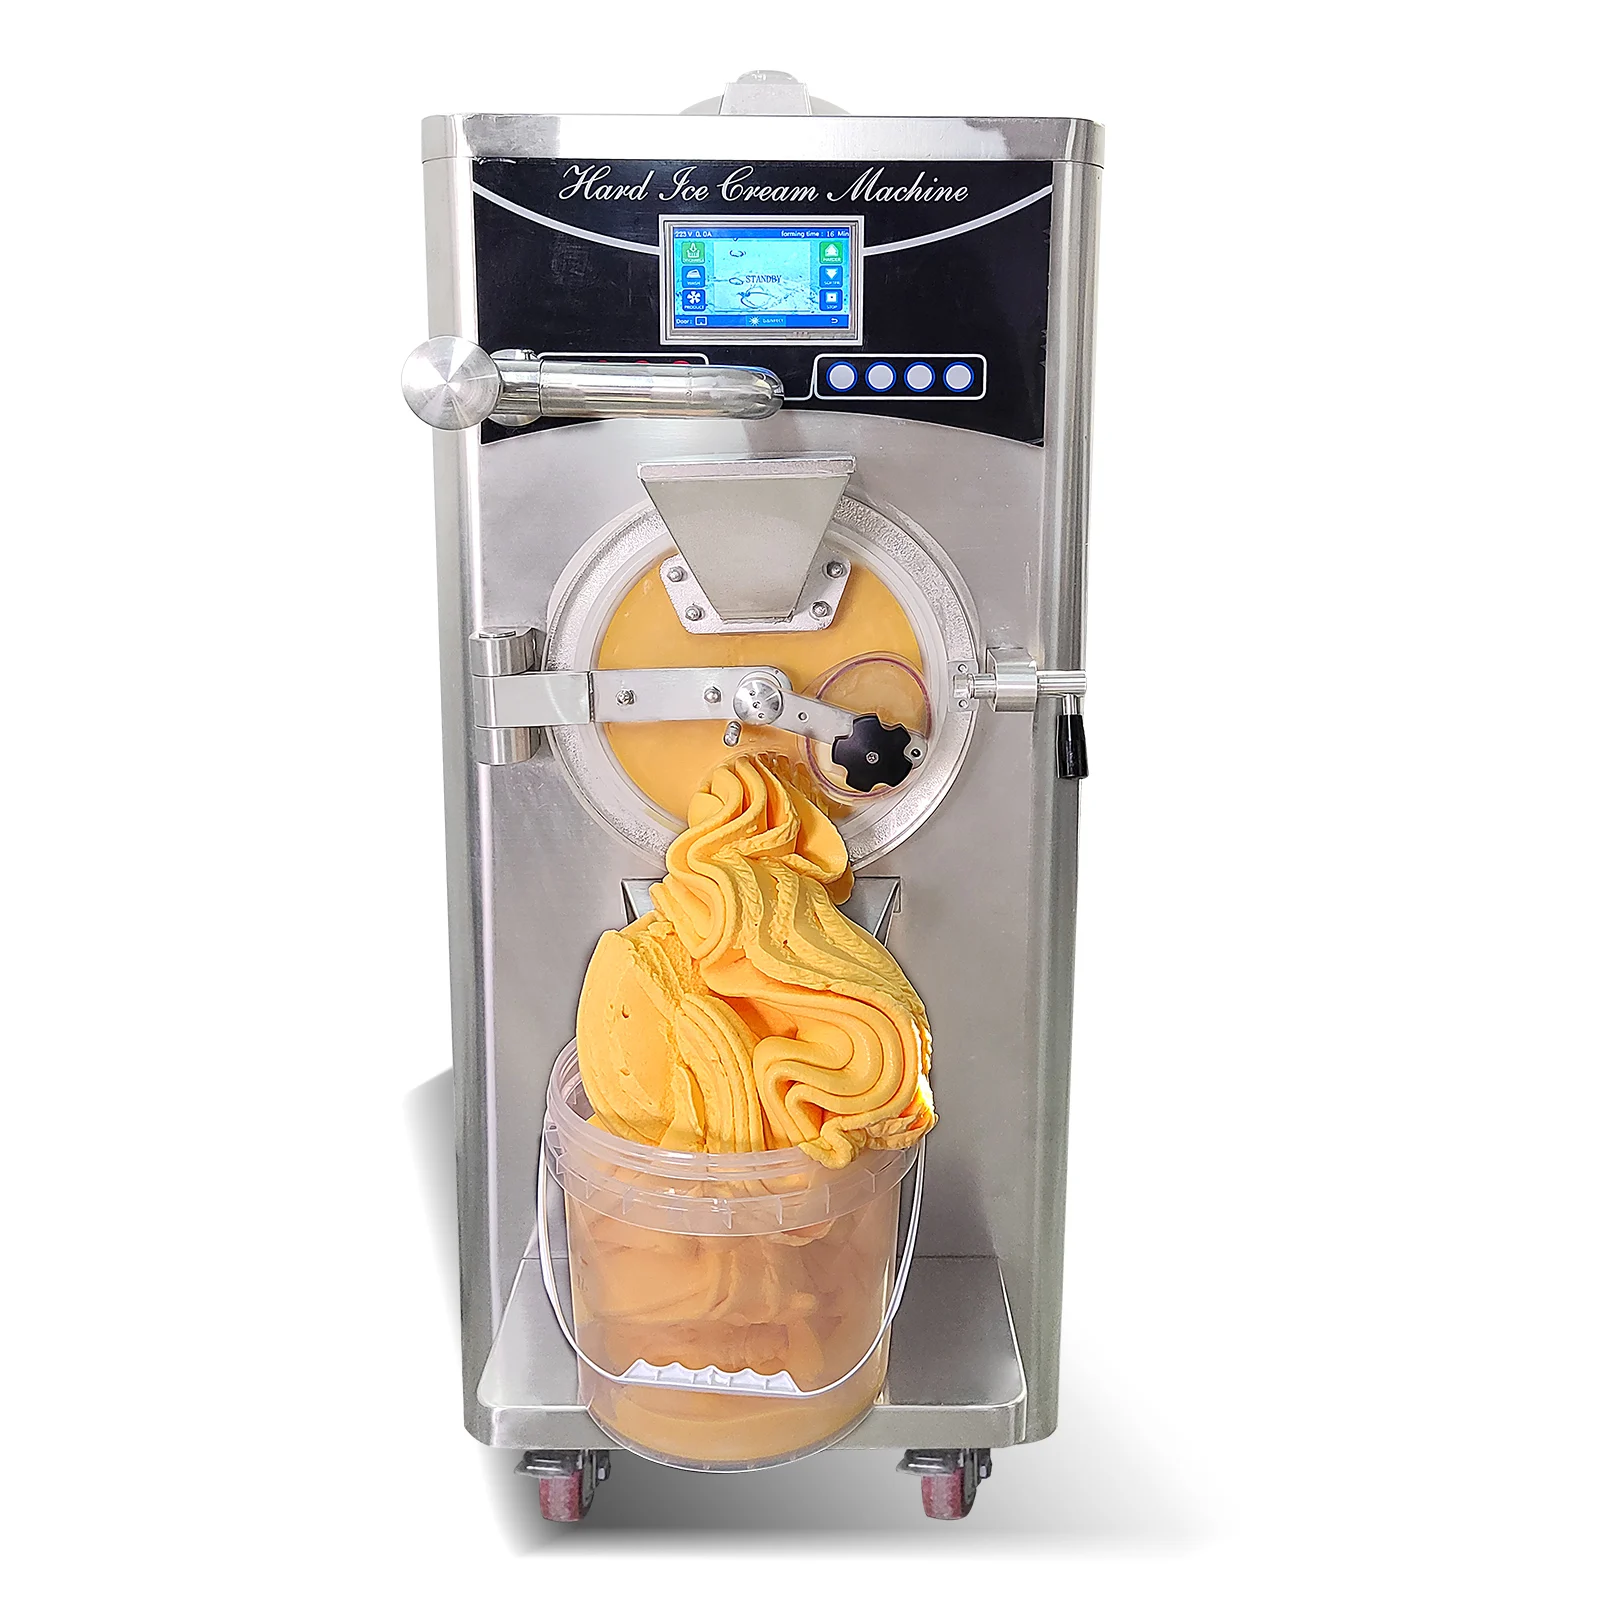 https://ae01.alicdn.com/kf/S583d819d8079491ea32f1d5f03870a47y/Pasteurize-Heating-and-Freezing-Combined-Gelato-Machine-Hard-Ice-Cream-Maker-Yogurt-Making-Yogurt-Makers.jpg